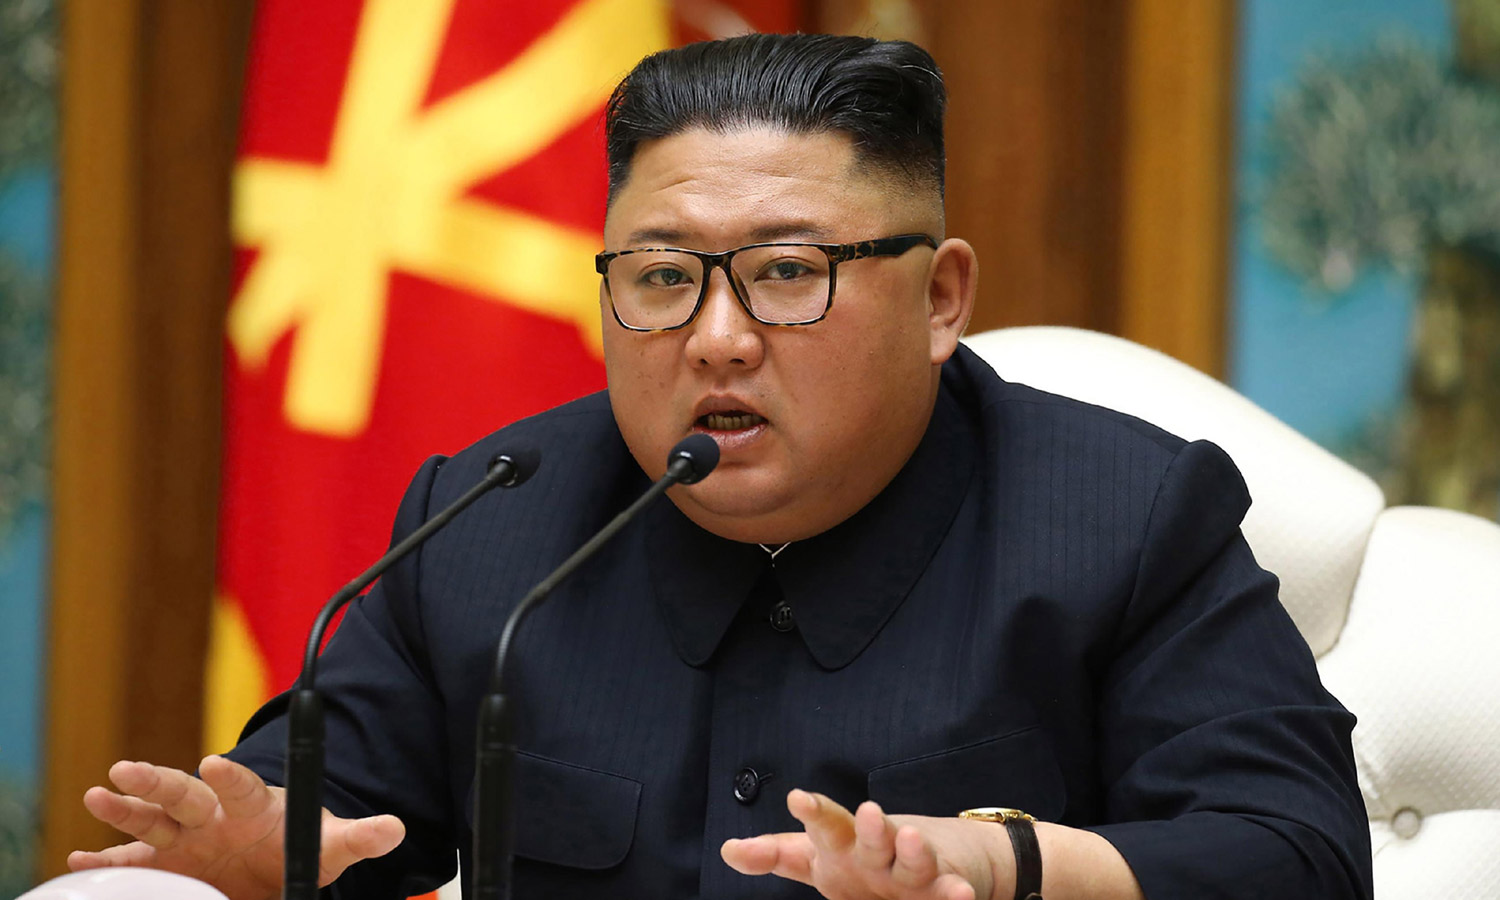 Curfew in North Korean city – officials conduct door-to-door search